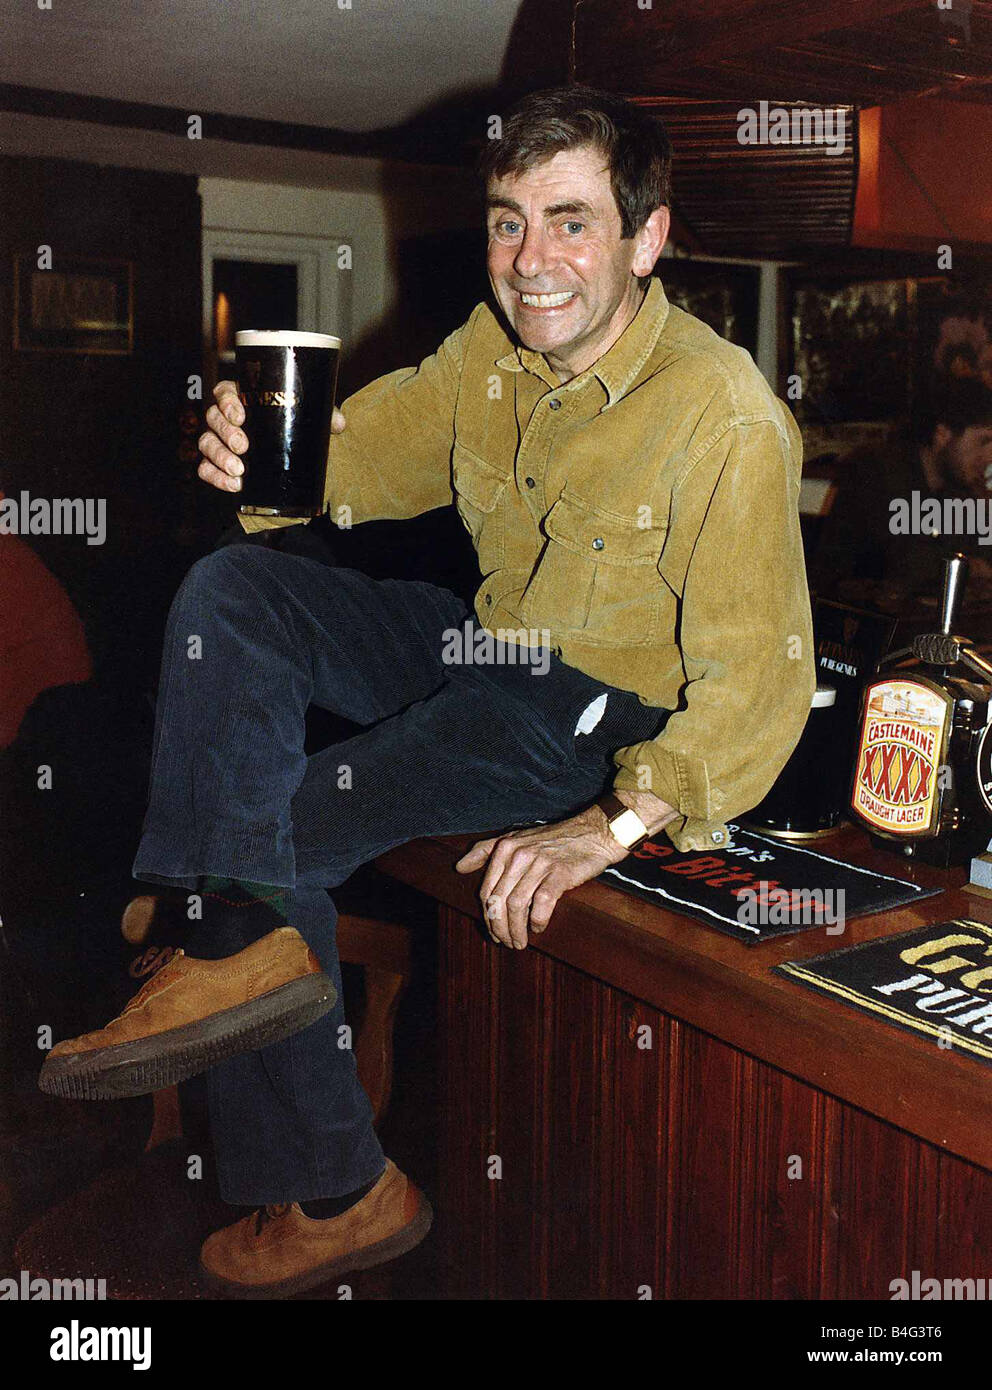 Melvyn Hayes acteur publicain dans sa pub à St Albans, Hertfordshire assis sur Bar avec pinte de Guinness à la main 16 Octobre 1992 Promotion pour Guinnes Banque D'Images